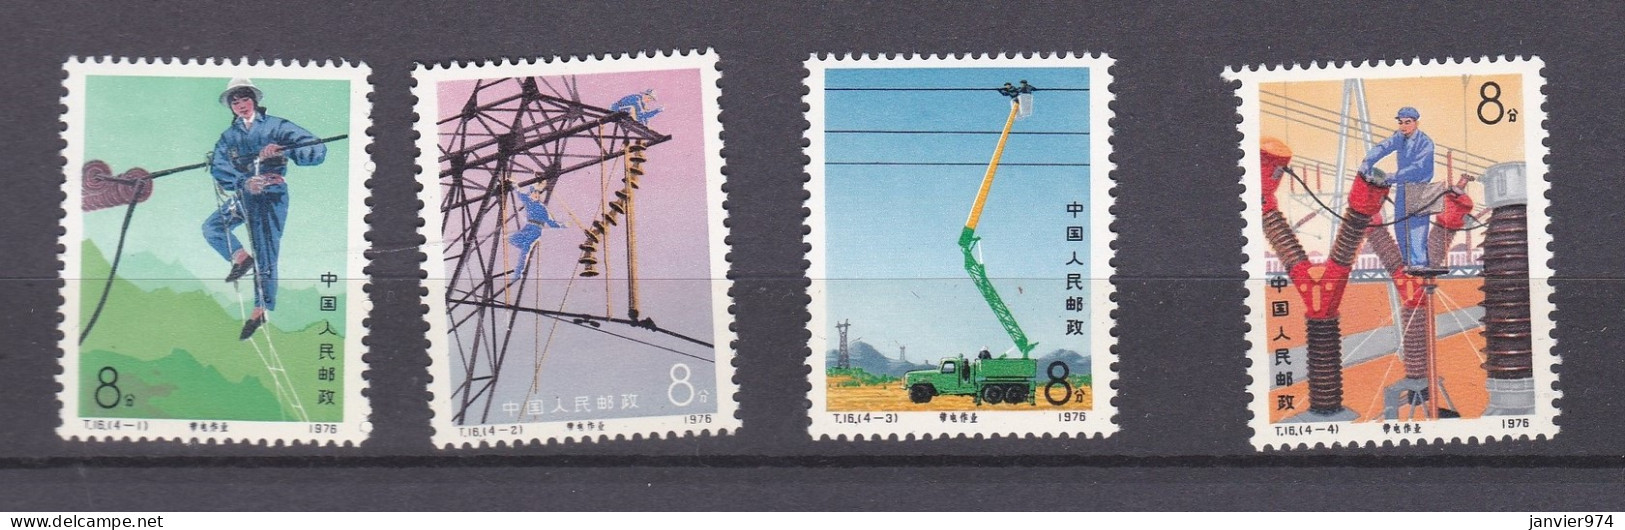 Chine 1976 La Serie Complete  Entretien Des Lignes électriques, 4 Timbres Neufs 1296 à 1299 - Nuevos